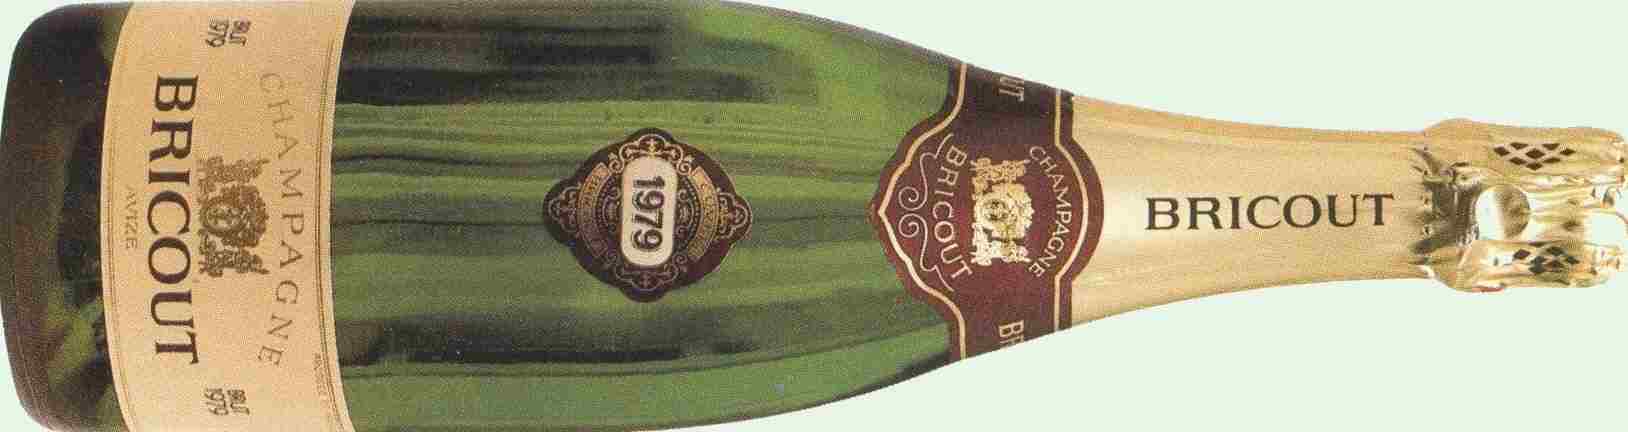 Histoire du Champagne Bricout fond en 1966 ------> 